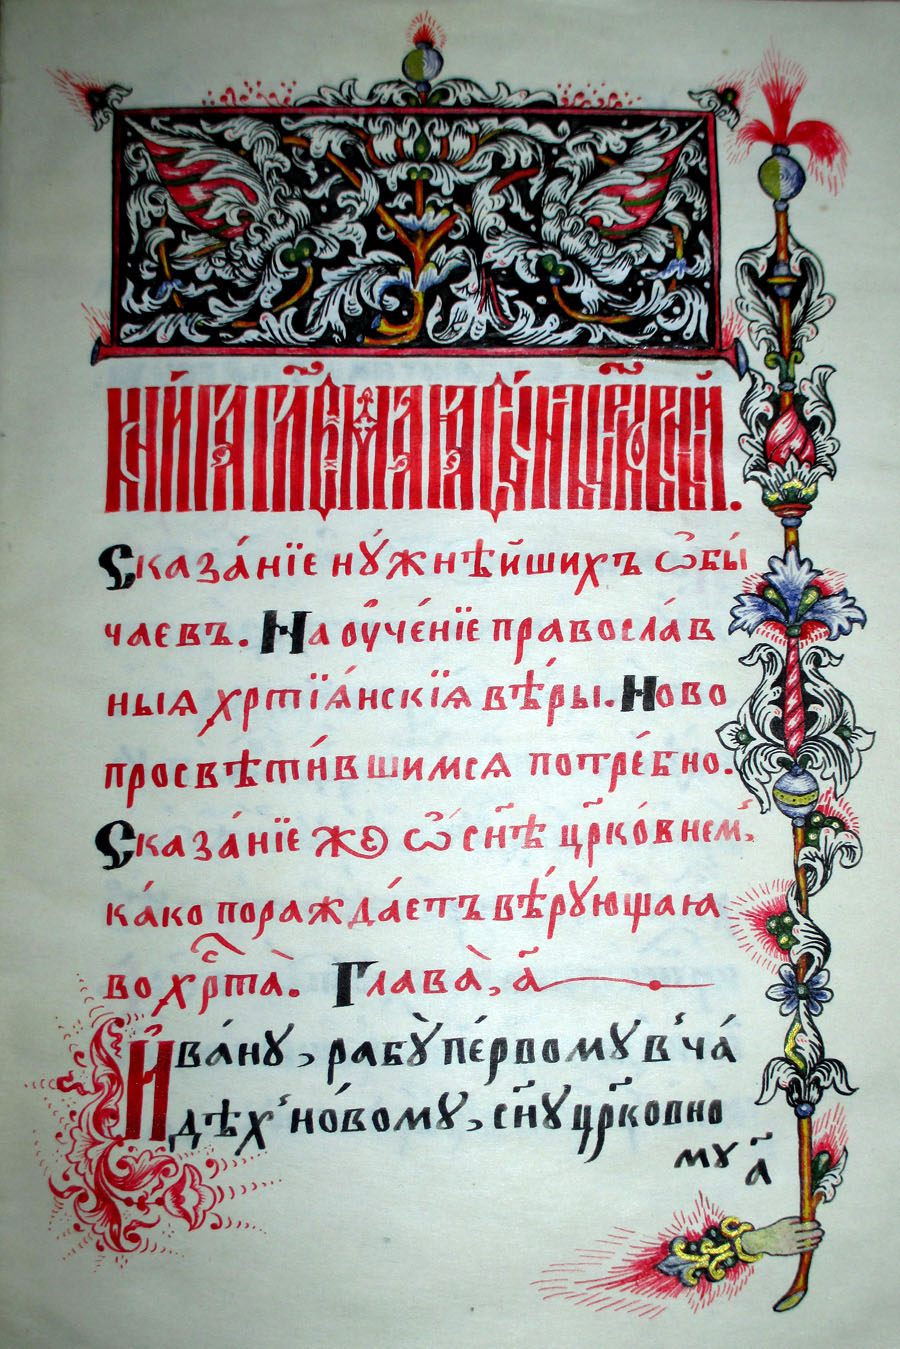 Фрагмент рукописи «Сын церковный» работы братьев Леоненко